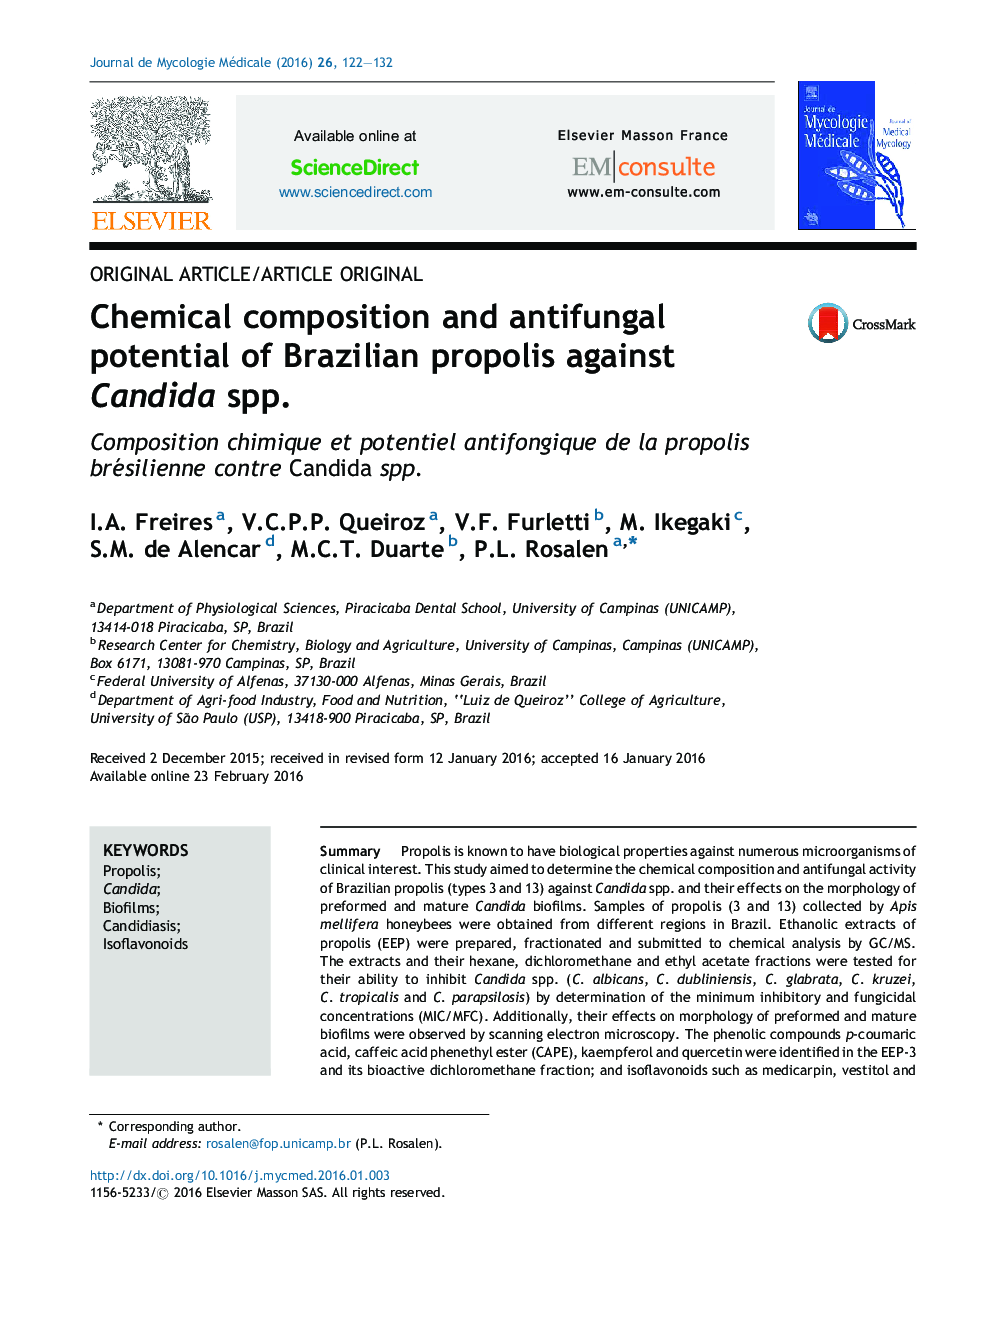 ترکیب شیمیایی و پتانسیل ضد قارچی پروپولیس برزیلی علیه گونه های کاندیدا 